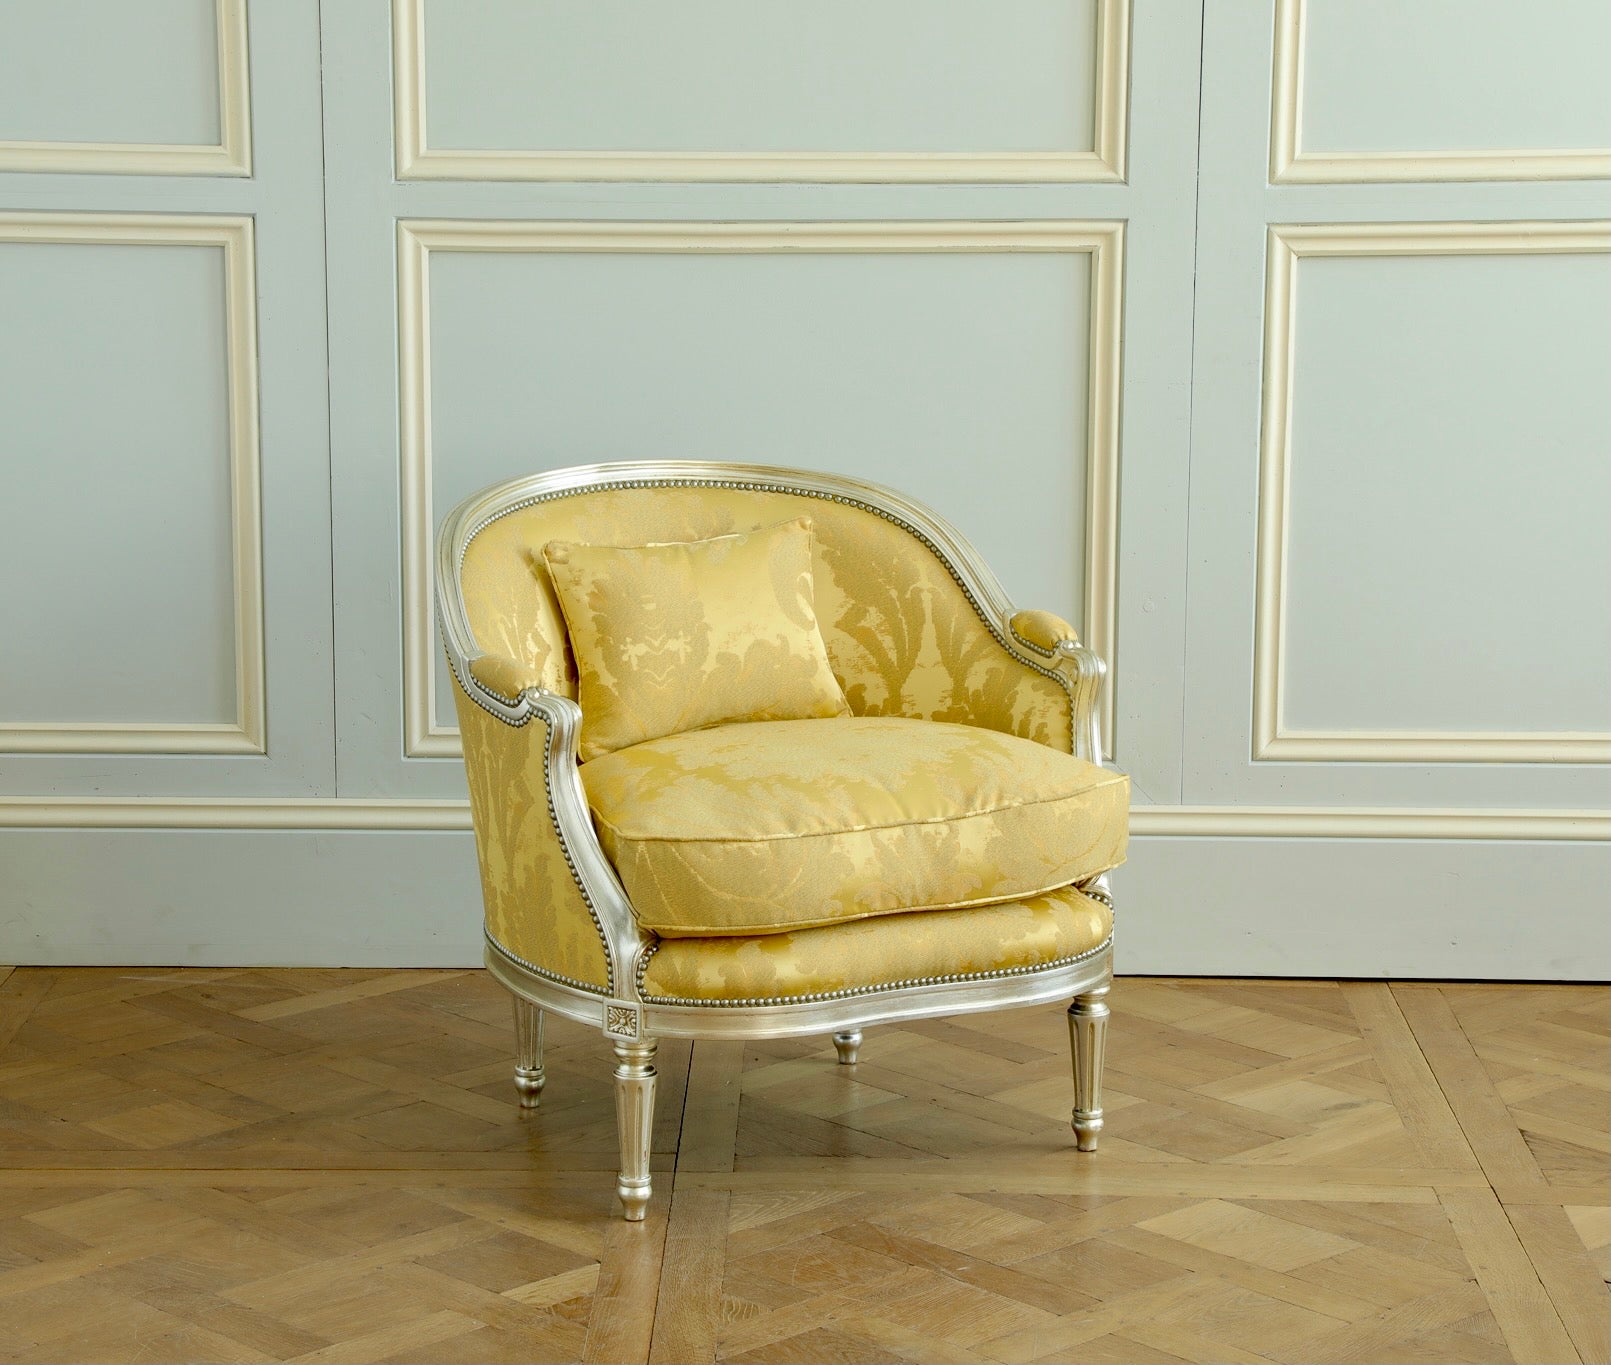 A  Marquise-Sessel im Hollywood-Regency-Stil mit eleganten Kurven und glamouröser, silbervergoldeter Holzoberfläche. Die Stühle sind mit einem bequemen Federkissen ausgestattet und mit einem italienischen Stoff von Rubelli gepolstert. Das blaue